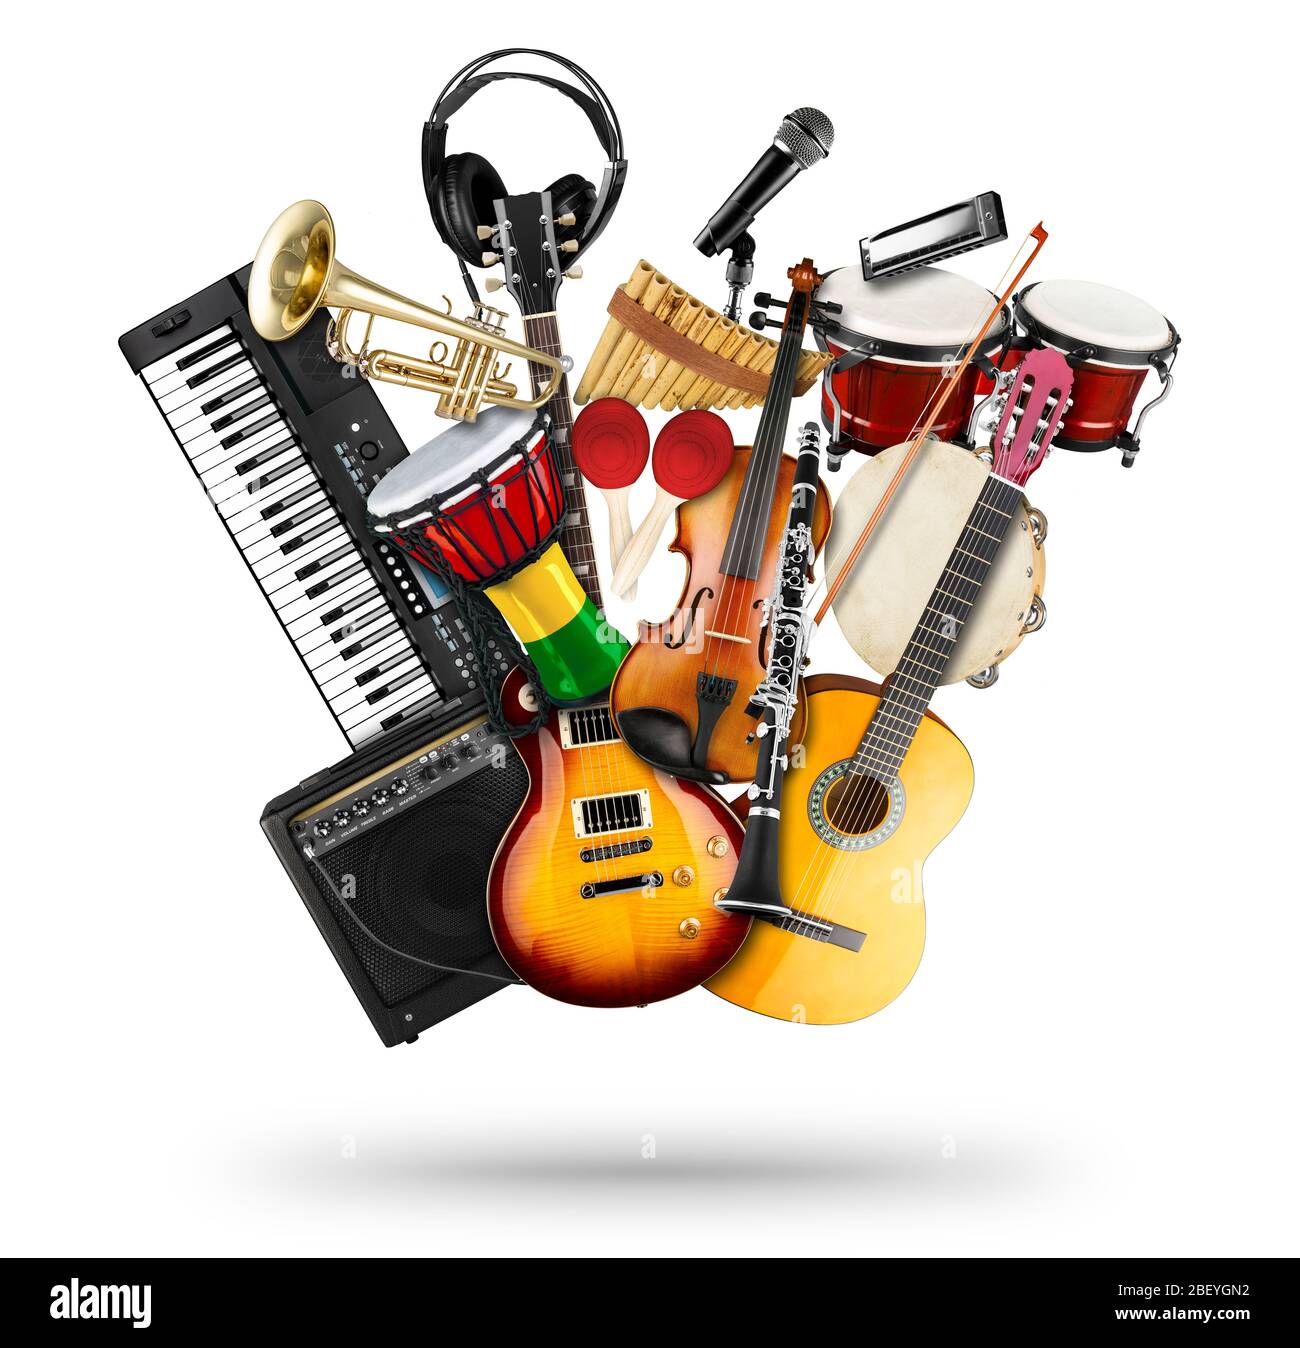 collage pile de divers instruments de musique. Guitare électrique violon  clavier piano bongo batterie tamburin harmonica trompette. Goujon à  percussion en laiton Photo Stock - Alamy